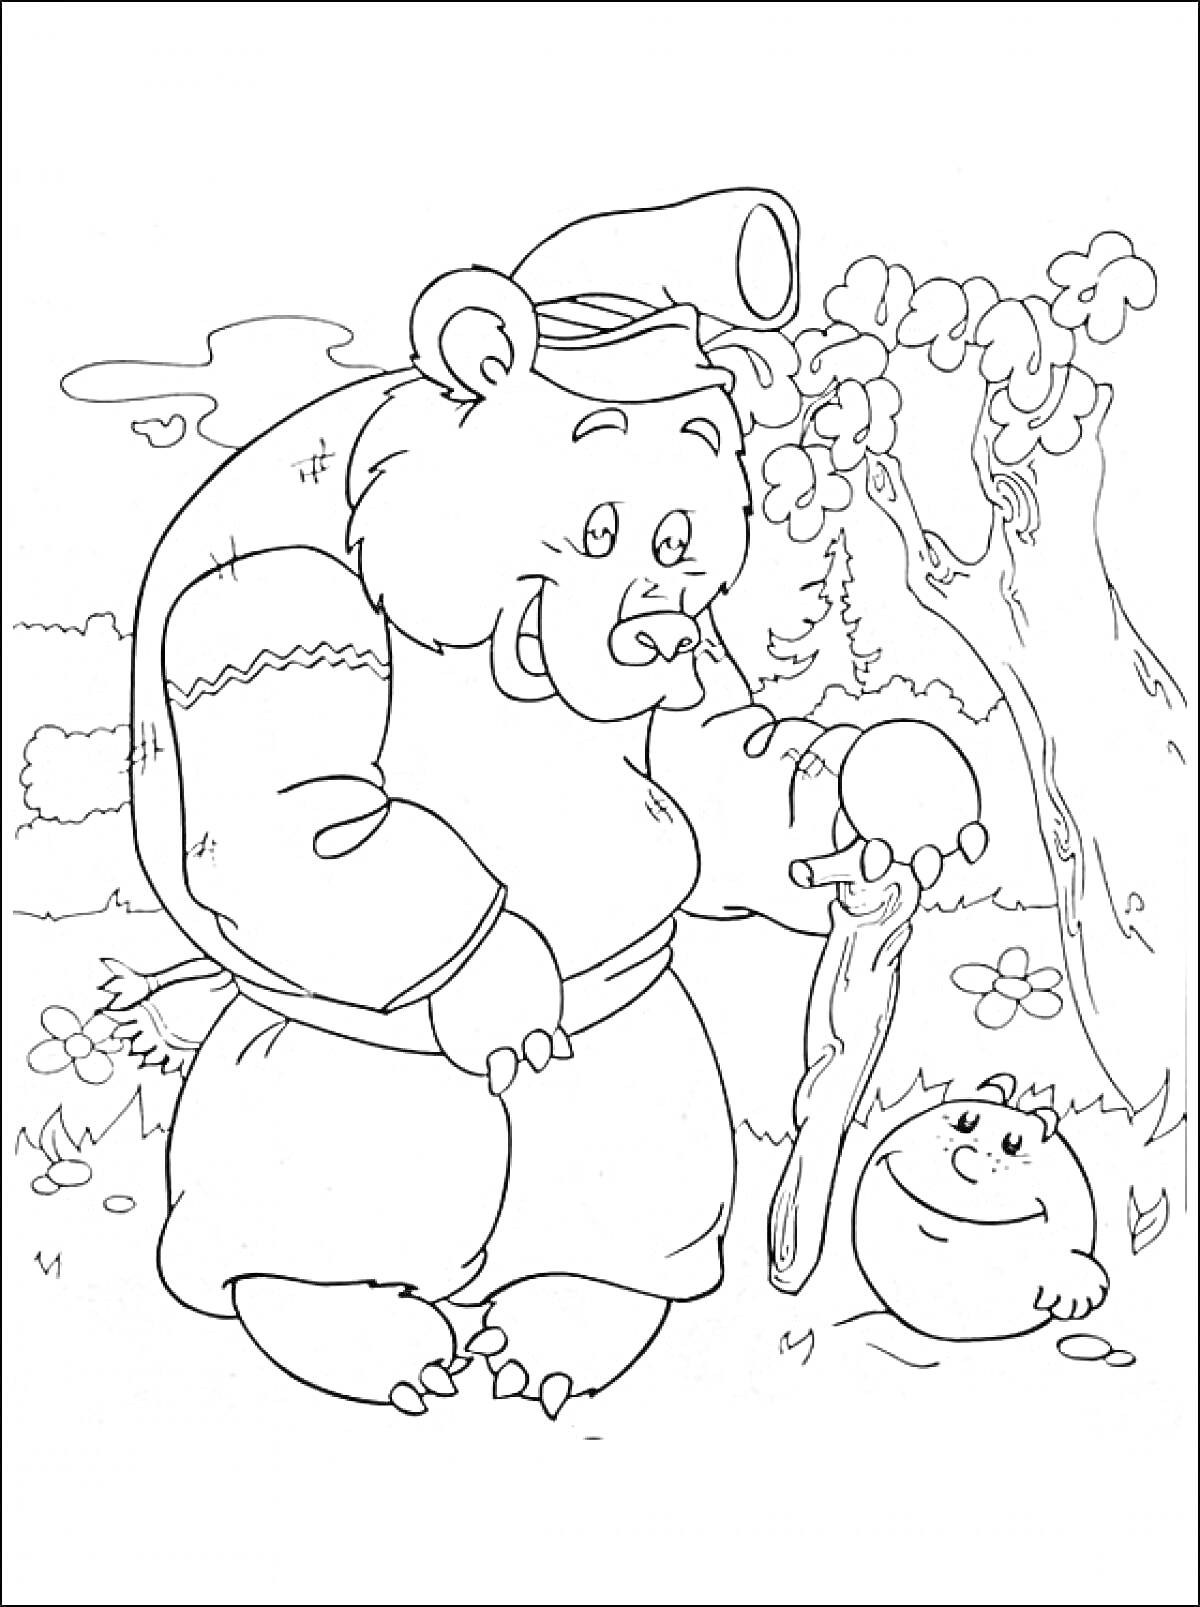 Раскраска Медведь с посохом и Колобок на луговой полянке, деревья и кустарники на заднем плане